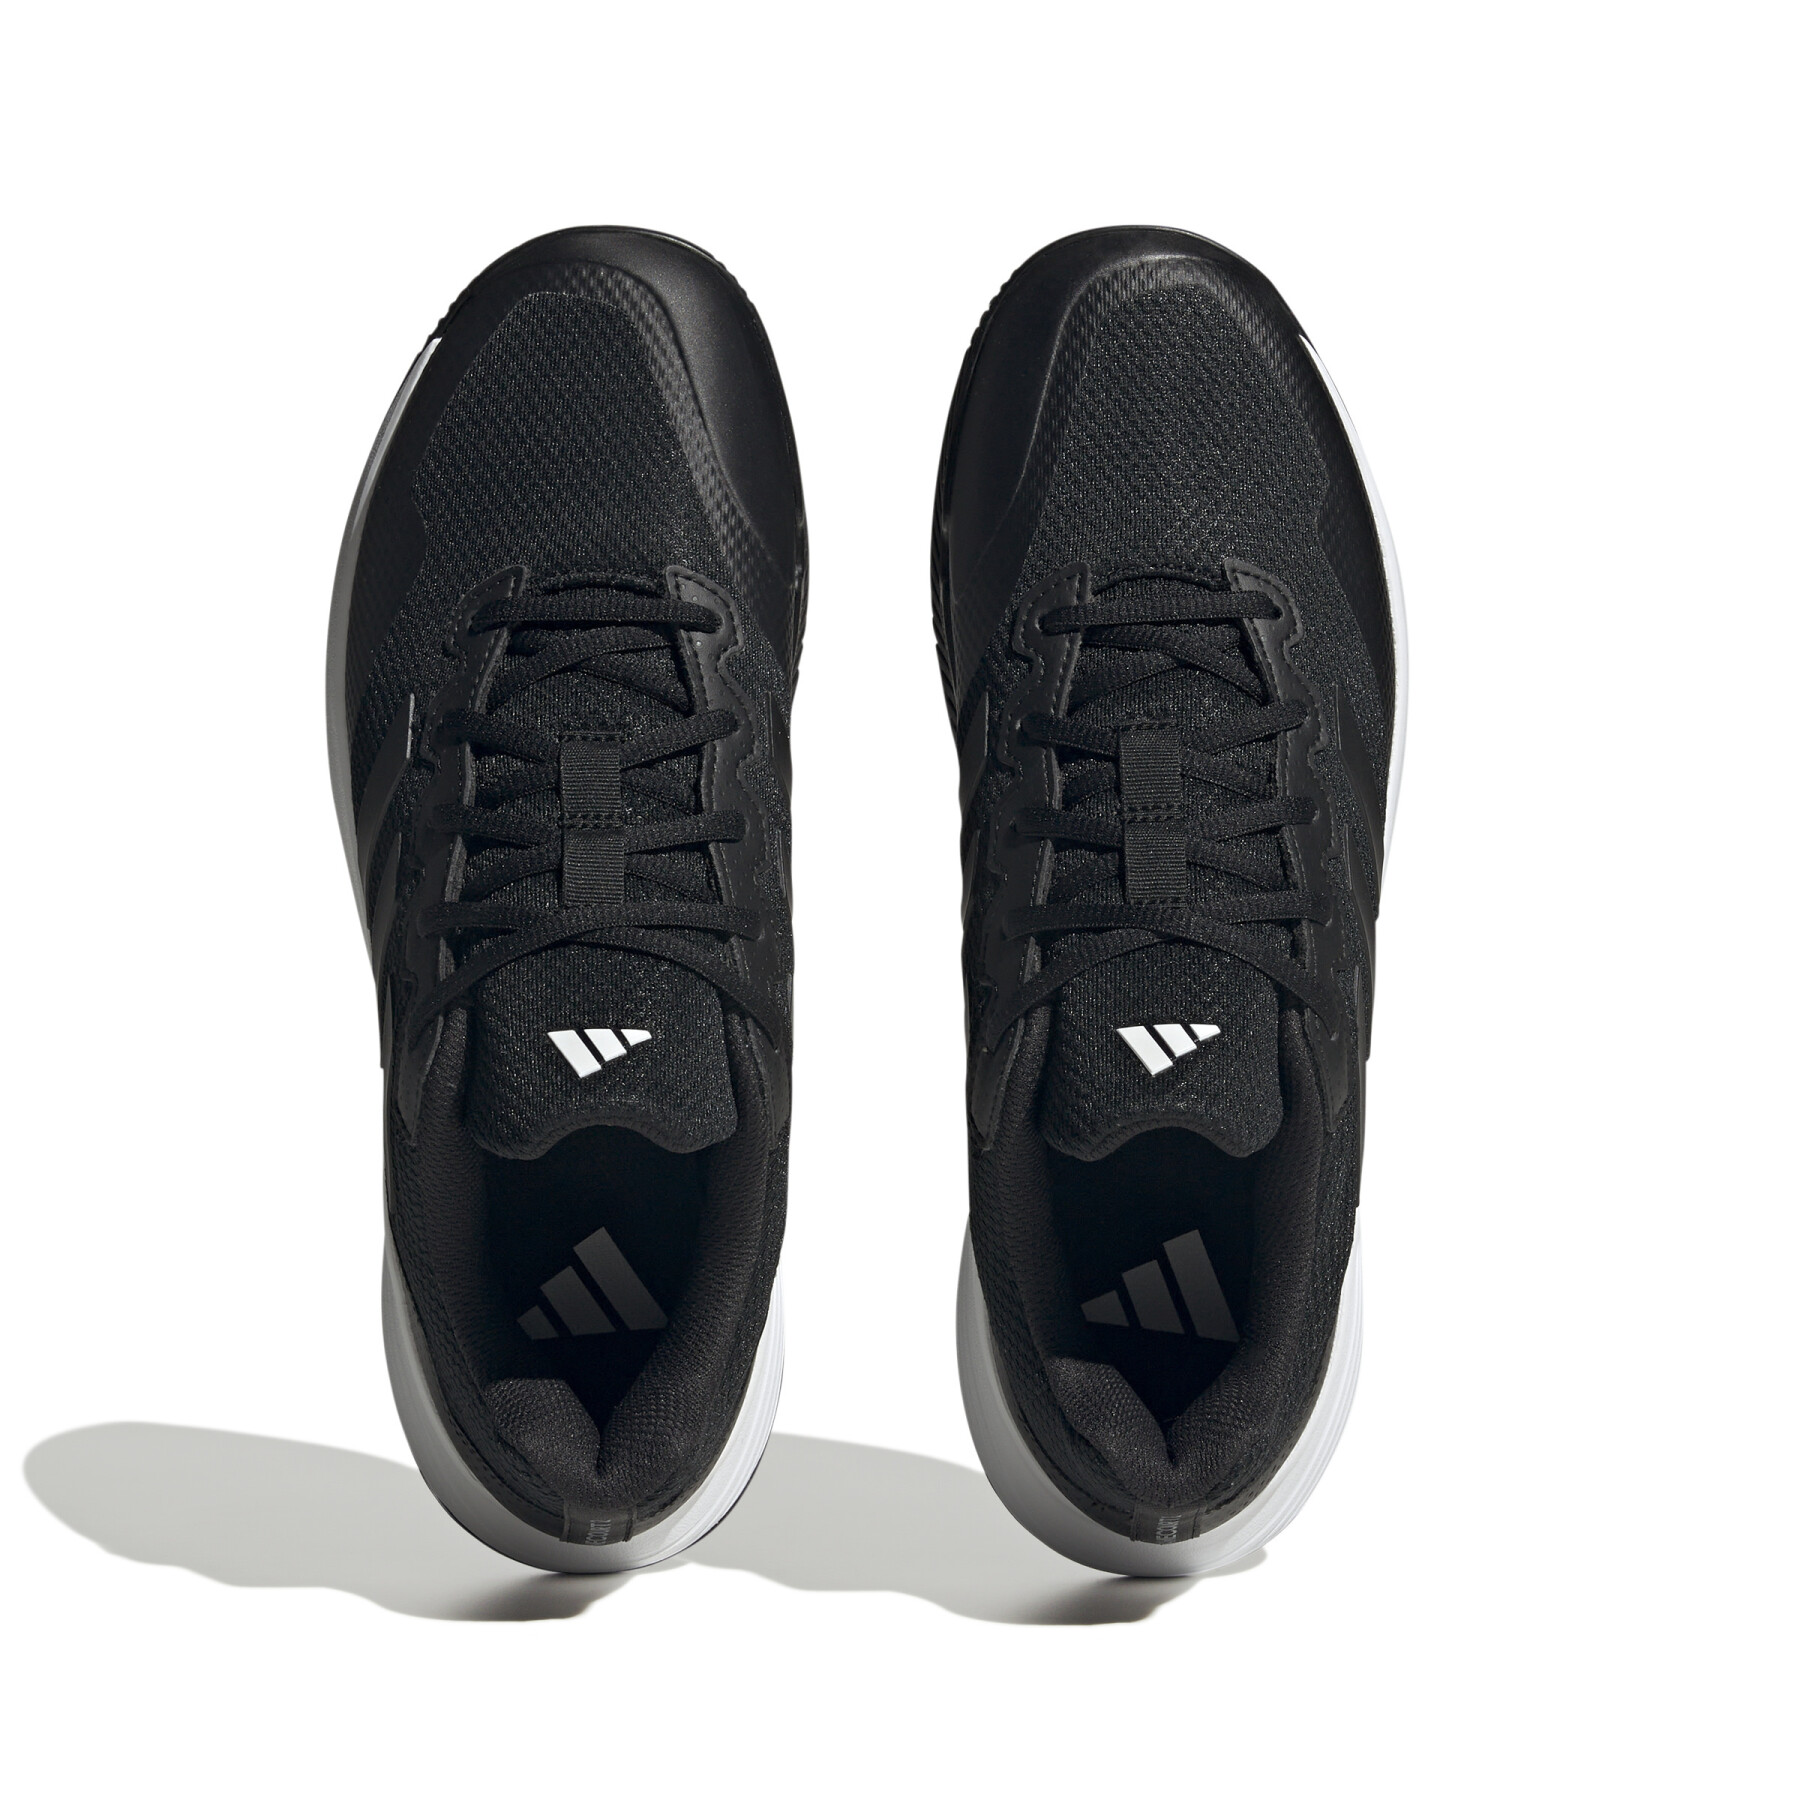 Chaussures de tennis adidas Gamecourt 2